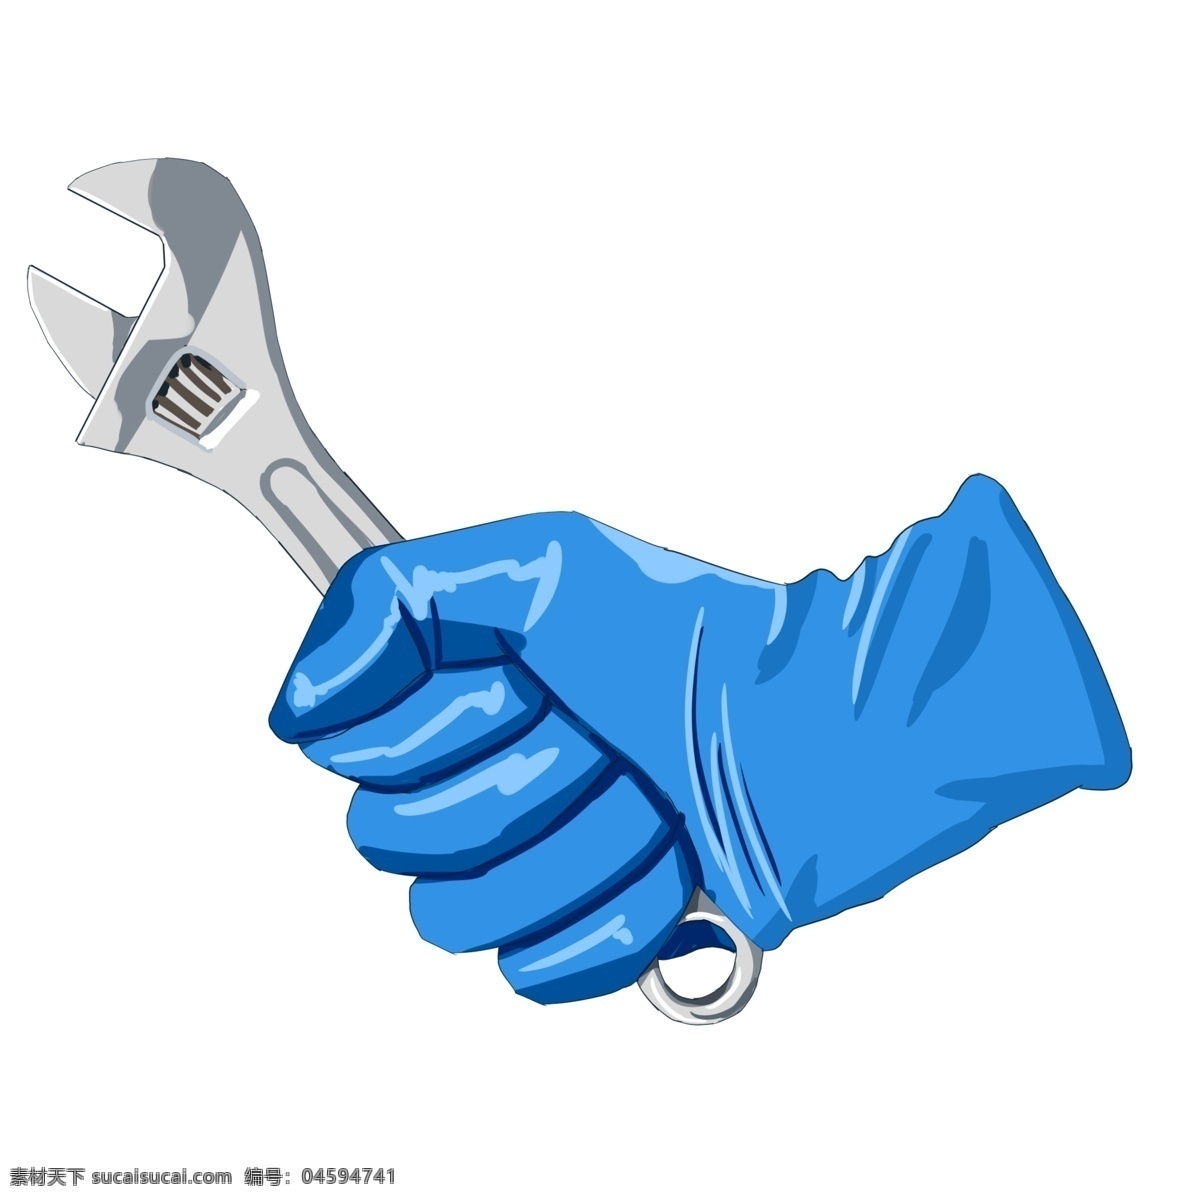 钢制 扳手 活动 蓝色手套 工具 活动扳手 金属扳手 绝缘手套